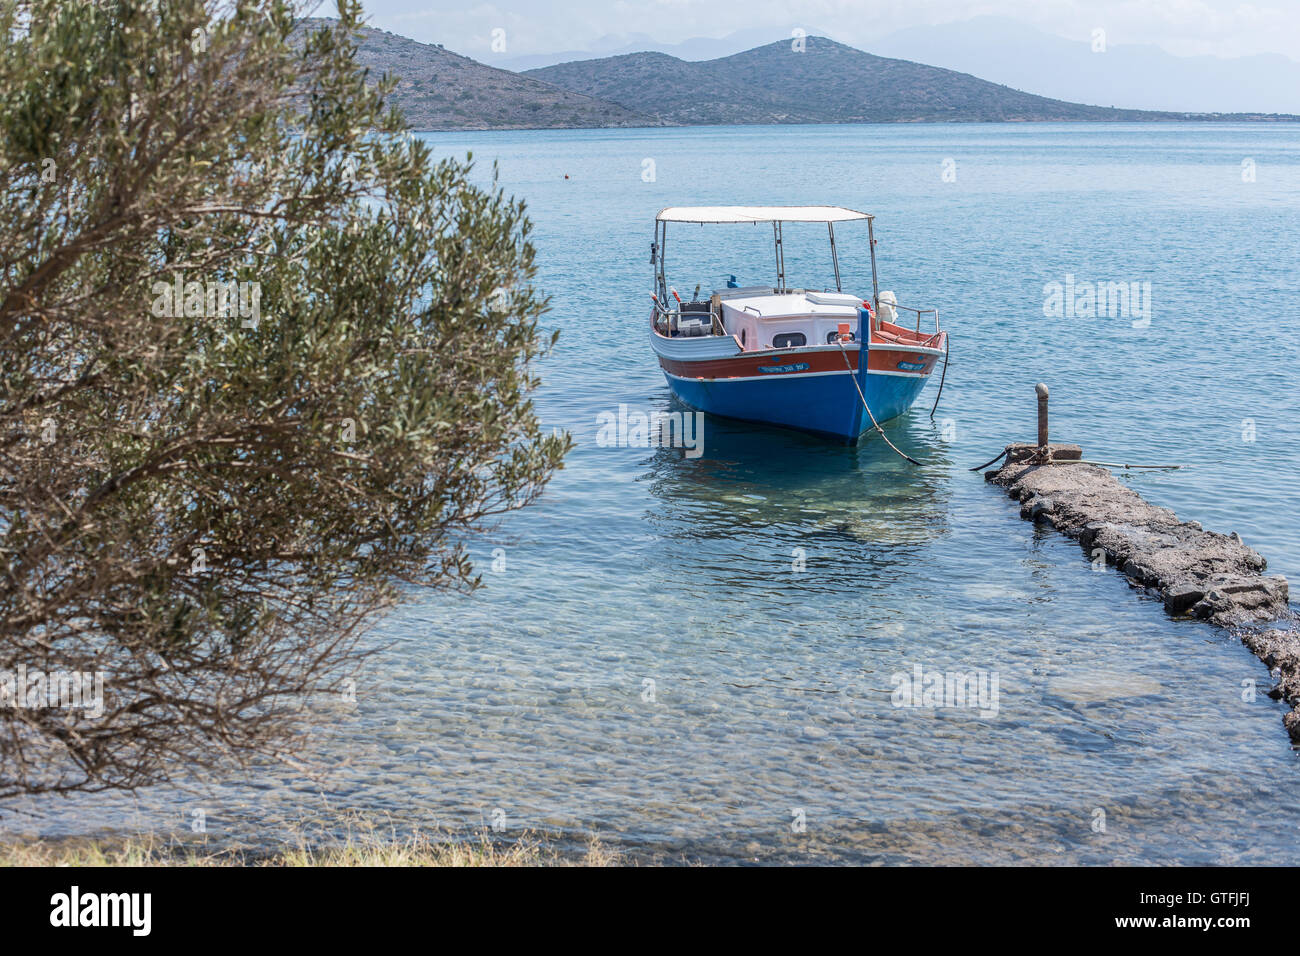 Bateaux de pêche sur la côte de la crète Elounda. Banque D'Images